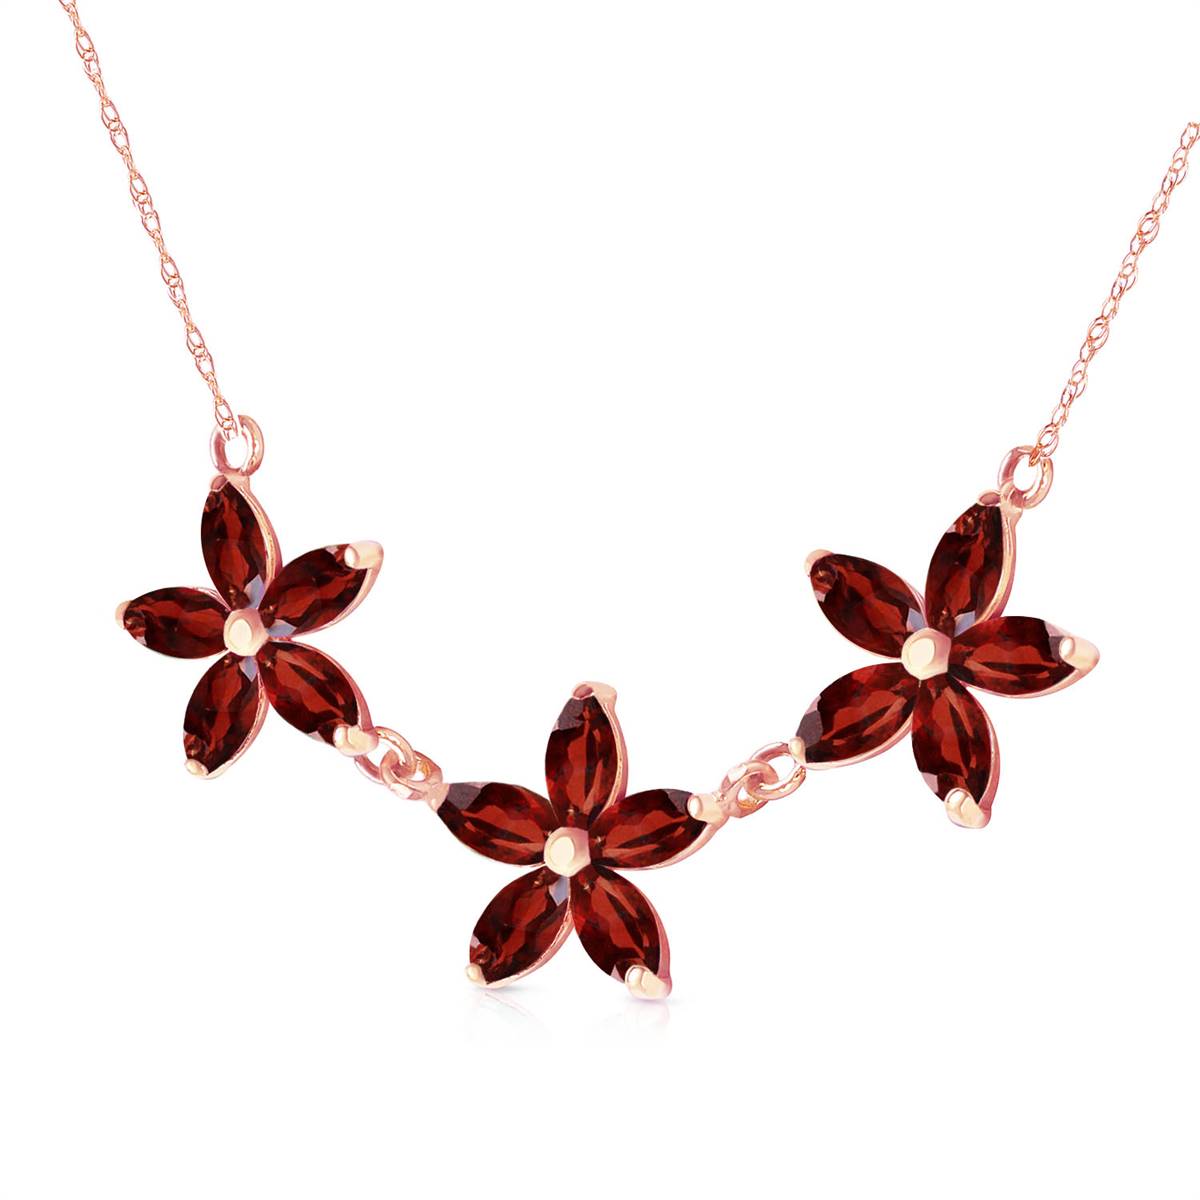 4.2 Carat 14K Solid Rose Gold Necklace Natural Garnet